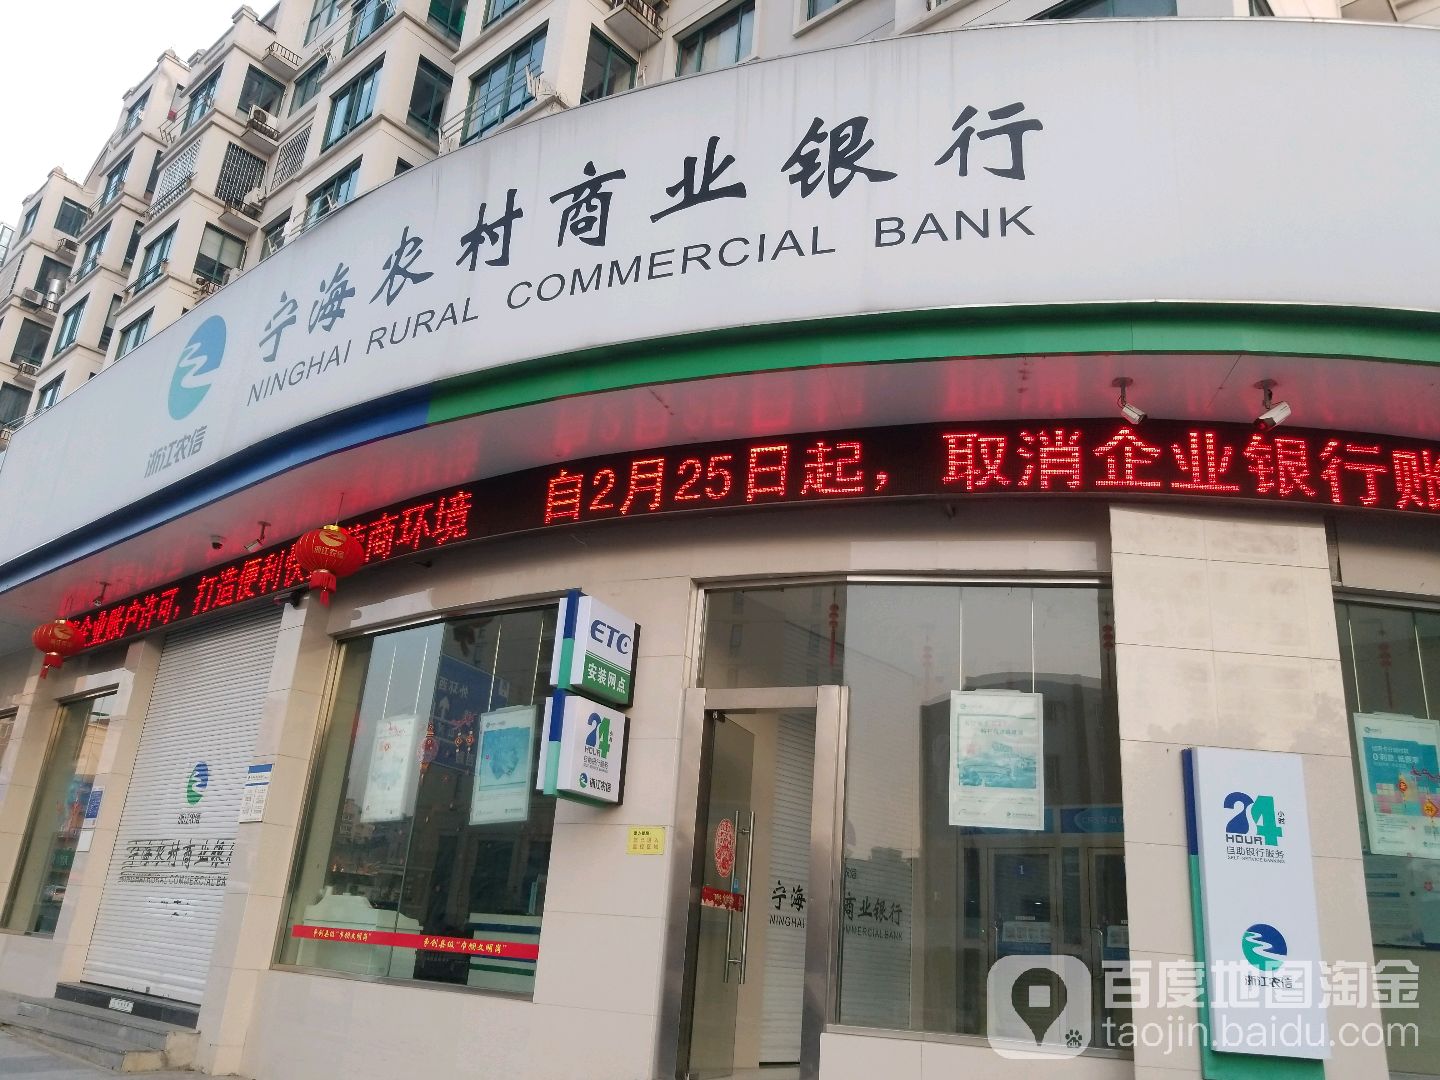 寧海農村商業銀行24小時自助銀行